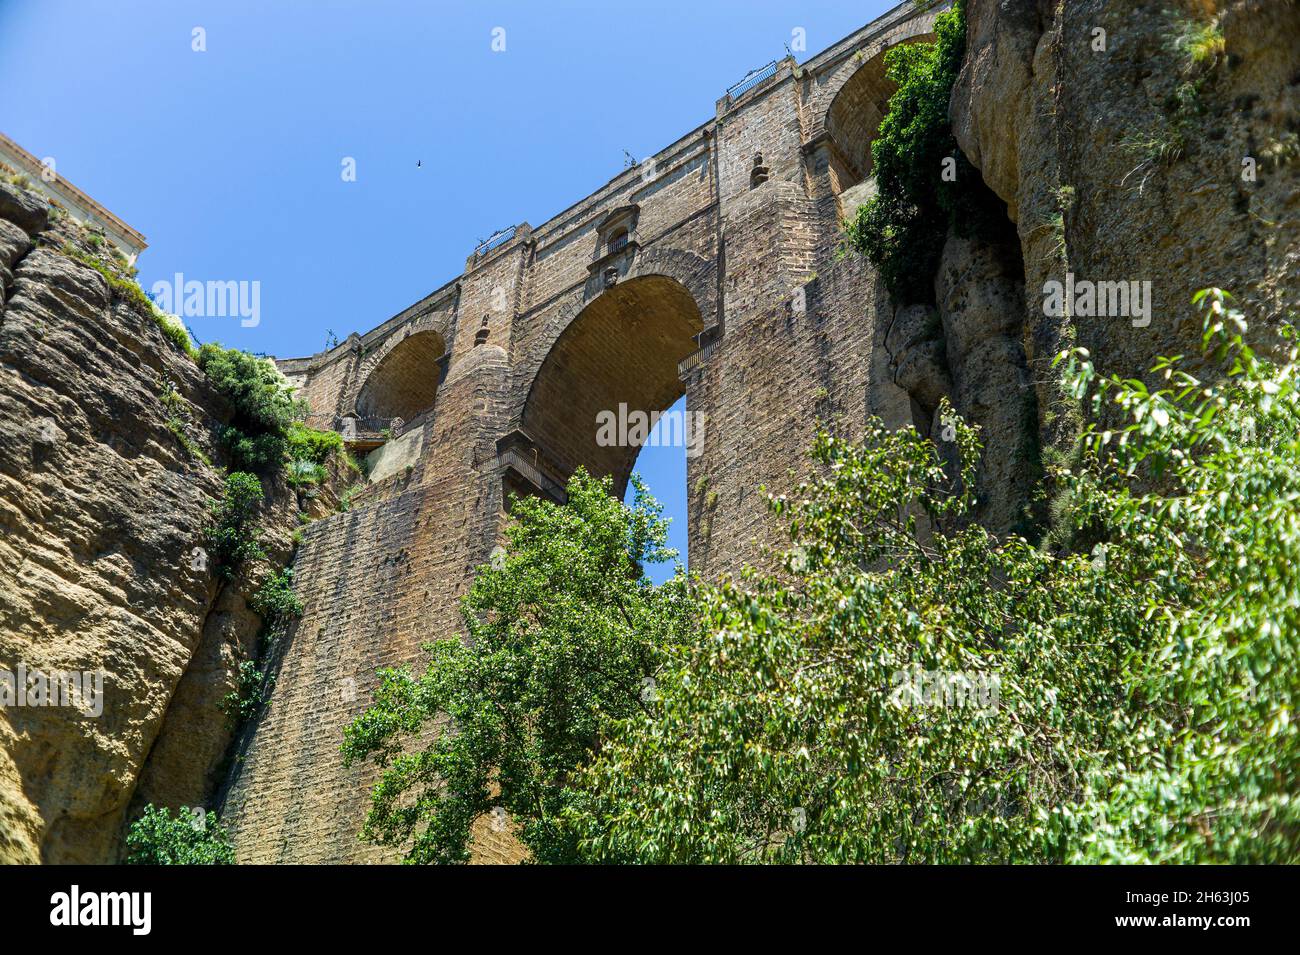 le puente nuevo (nouveau pont) s'étend sur le gouffre de 120 mètres de profondeur qui porte la rivière guadaleva–­n et divise la ville de ronda, la gorge el tajo. ronda, provence de malaga, andalousie, espagne. Banque D'Images